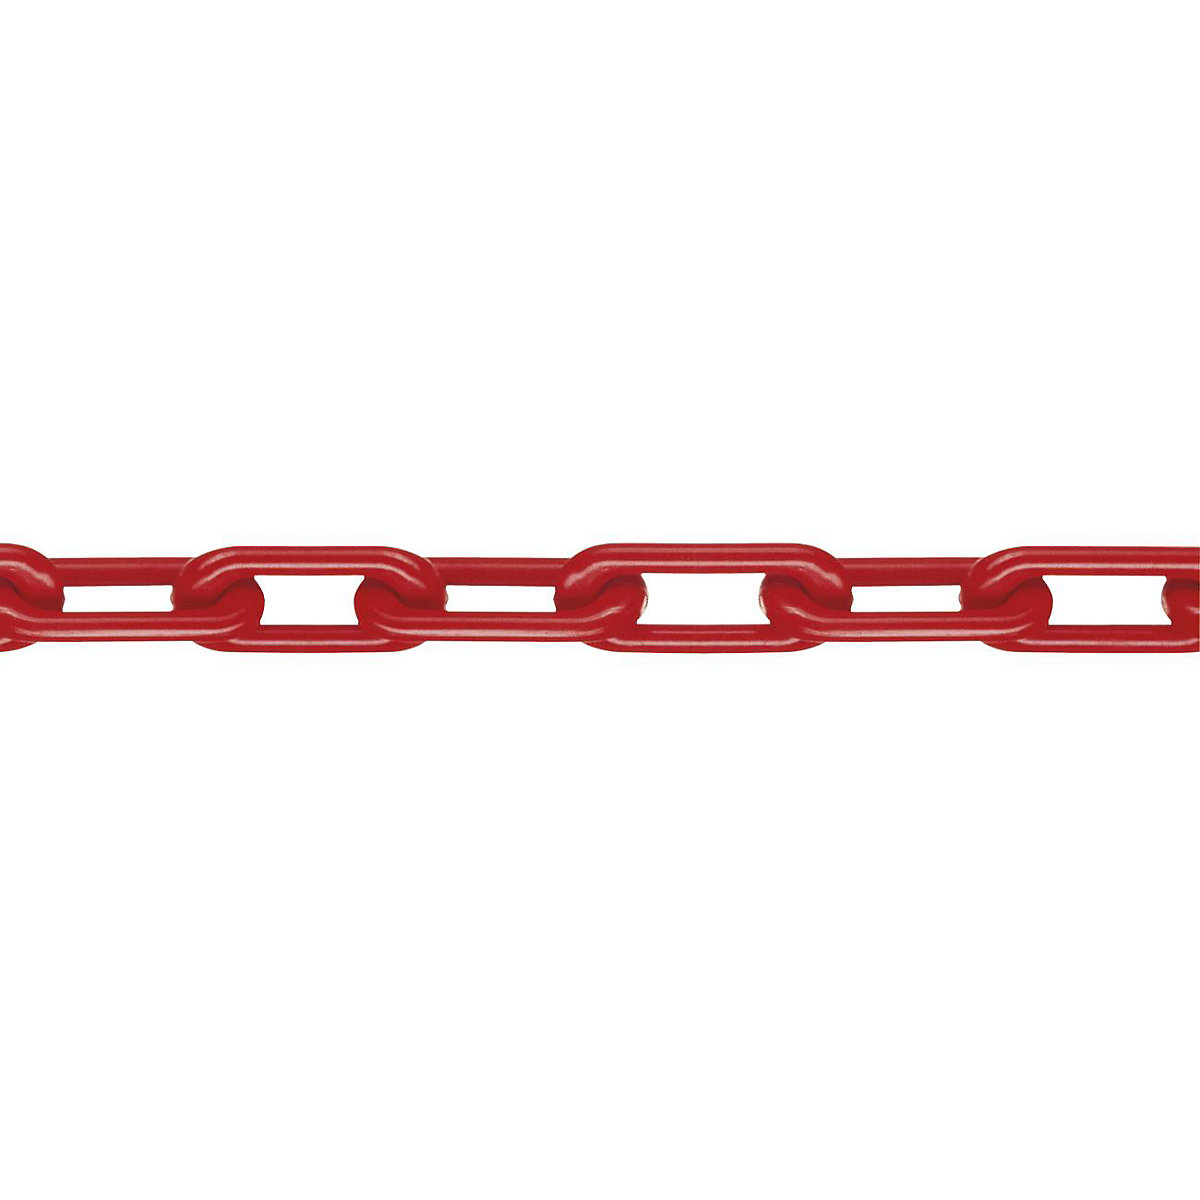 Chaîne en nylon, classe MNK 8, longueur d'épaulement 25 m, rouge, 4 pièces et +-2